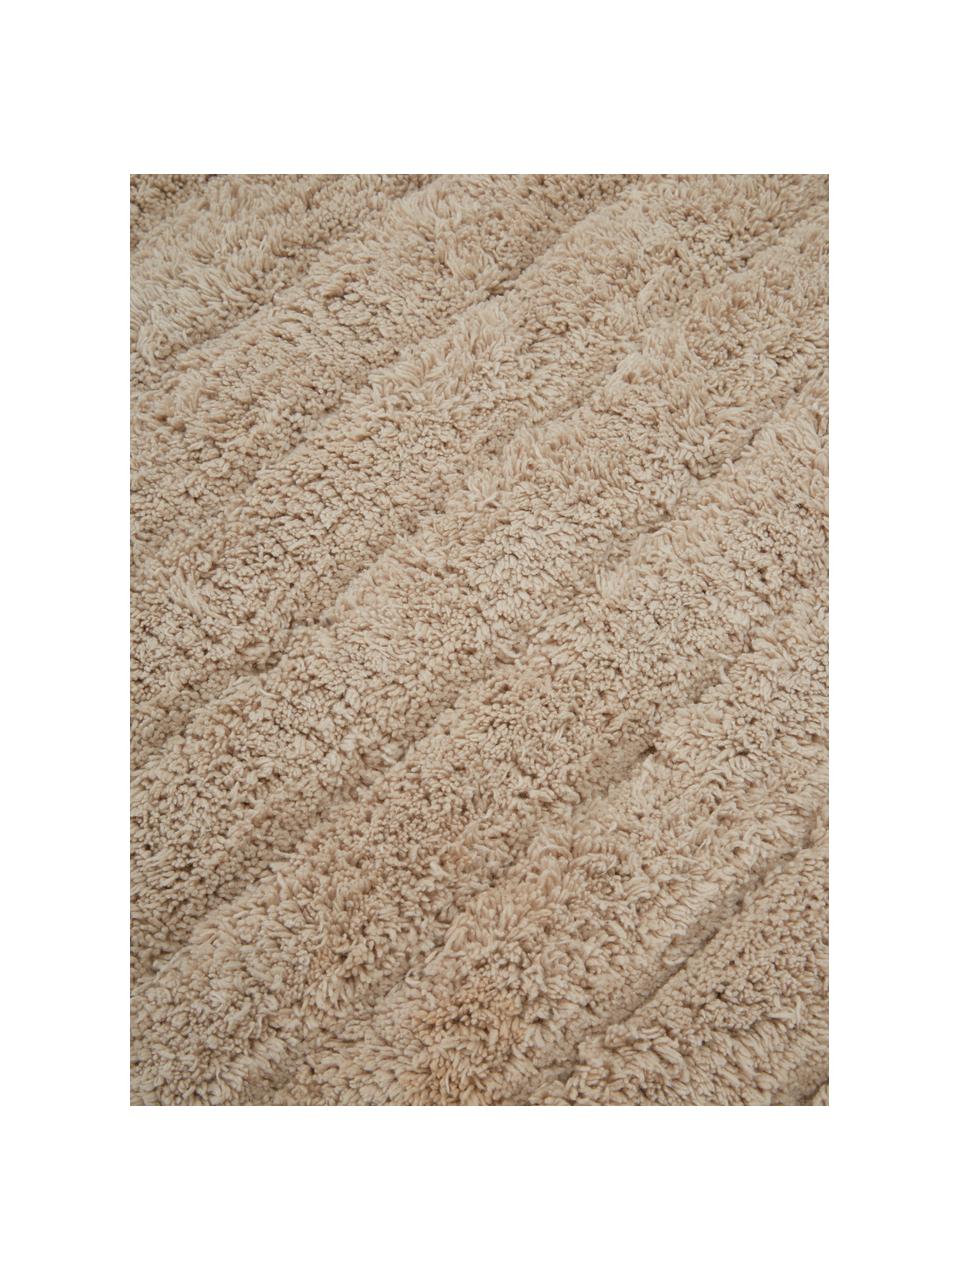 Flauschiger Badvorleger Board in Beige, 100% Baumwolle
Schwere Qualität, 1900 g/m², Beige, B 50 x L 60 cm